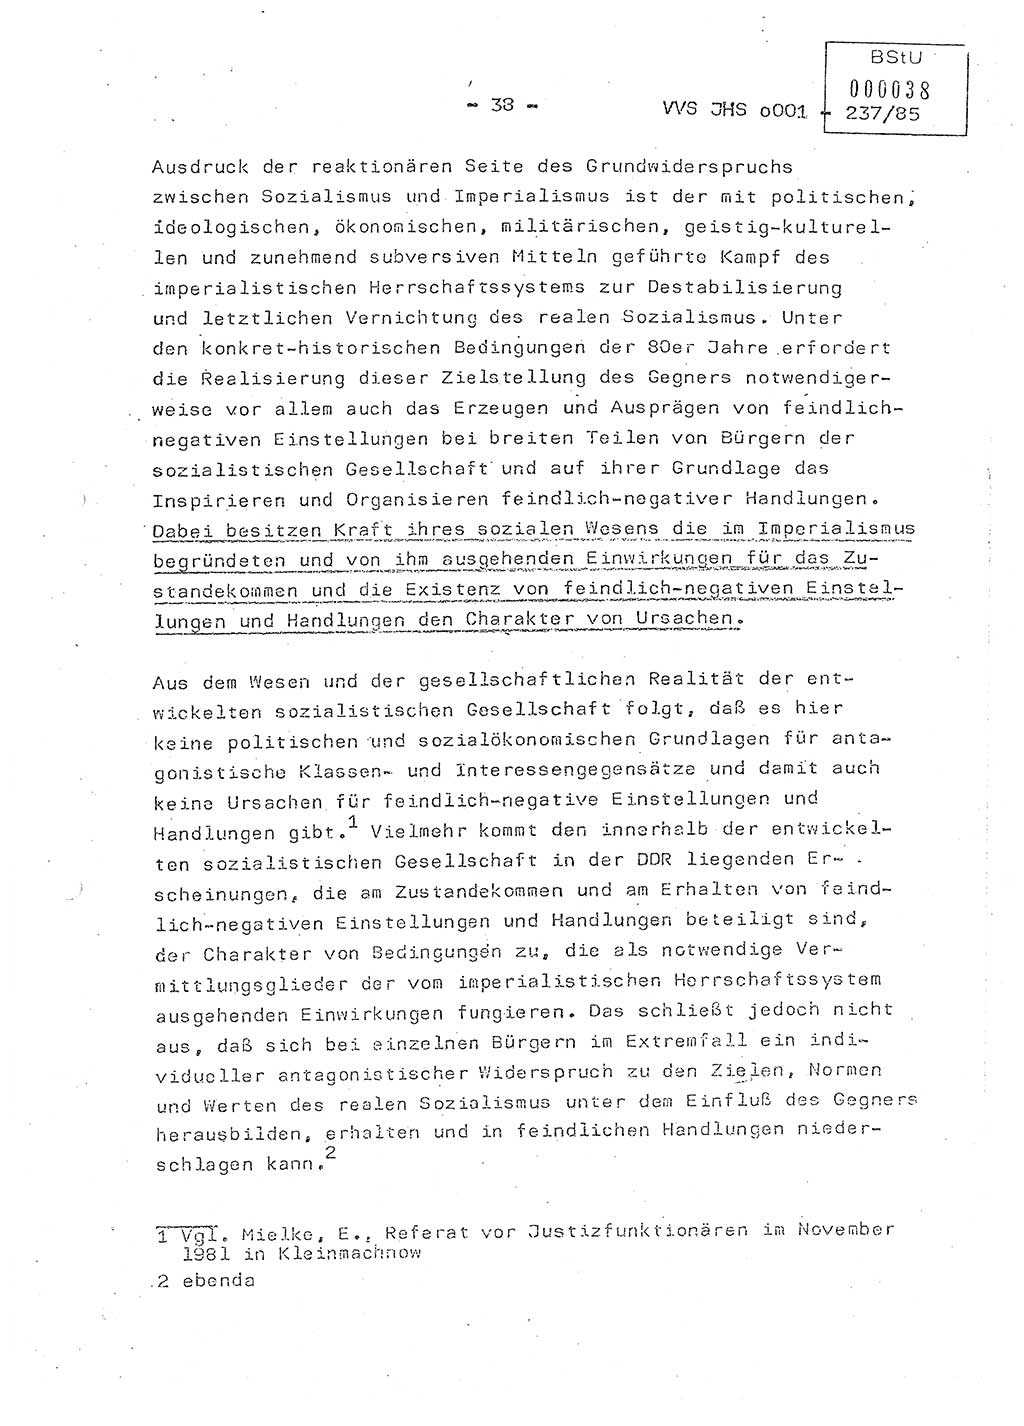 Dissertation Oberstleutnant Peter Jakulski (JHS), Oberstleutnat Christian Rudolph (HA Ⅸ), Major Horst Böttger (ZMD), Major Wolfgang Grüneberg (JHS), Major Albert Meutsch (JHS), Ministerium für Staatssicherheit (MfS) [Deutsche Demokratische Republik (DDR)], Juristische Hochschule (JHS), Vertrauliche Verschlußsache (VVS) o001-237/85, Potsdam 1985, Seite 38 (Diss. MfS DDR JHS VVS o001-237/85 1985, S. 38)